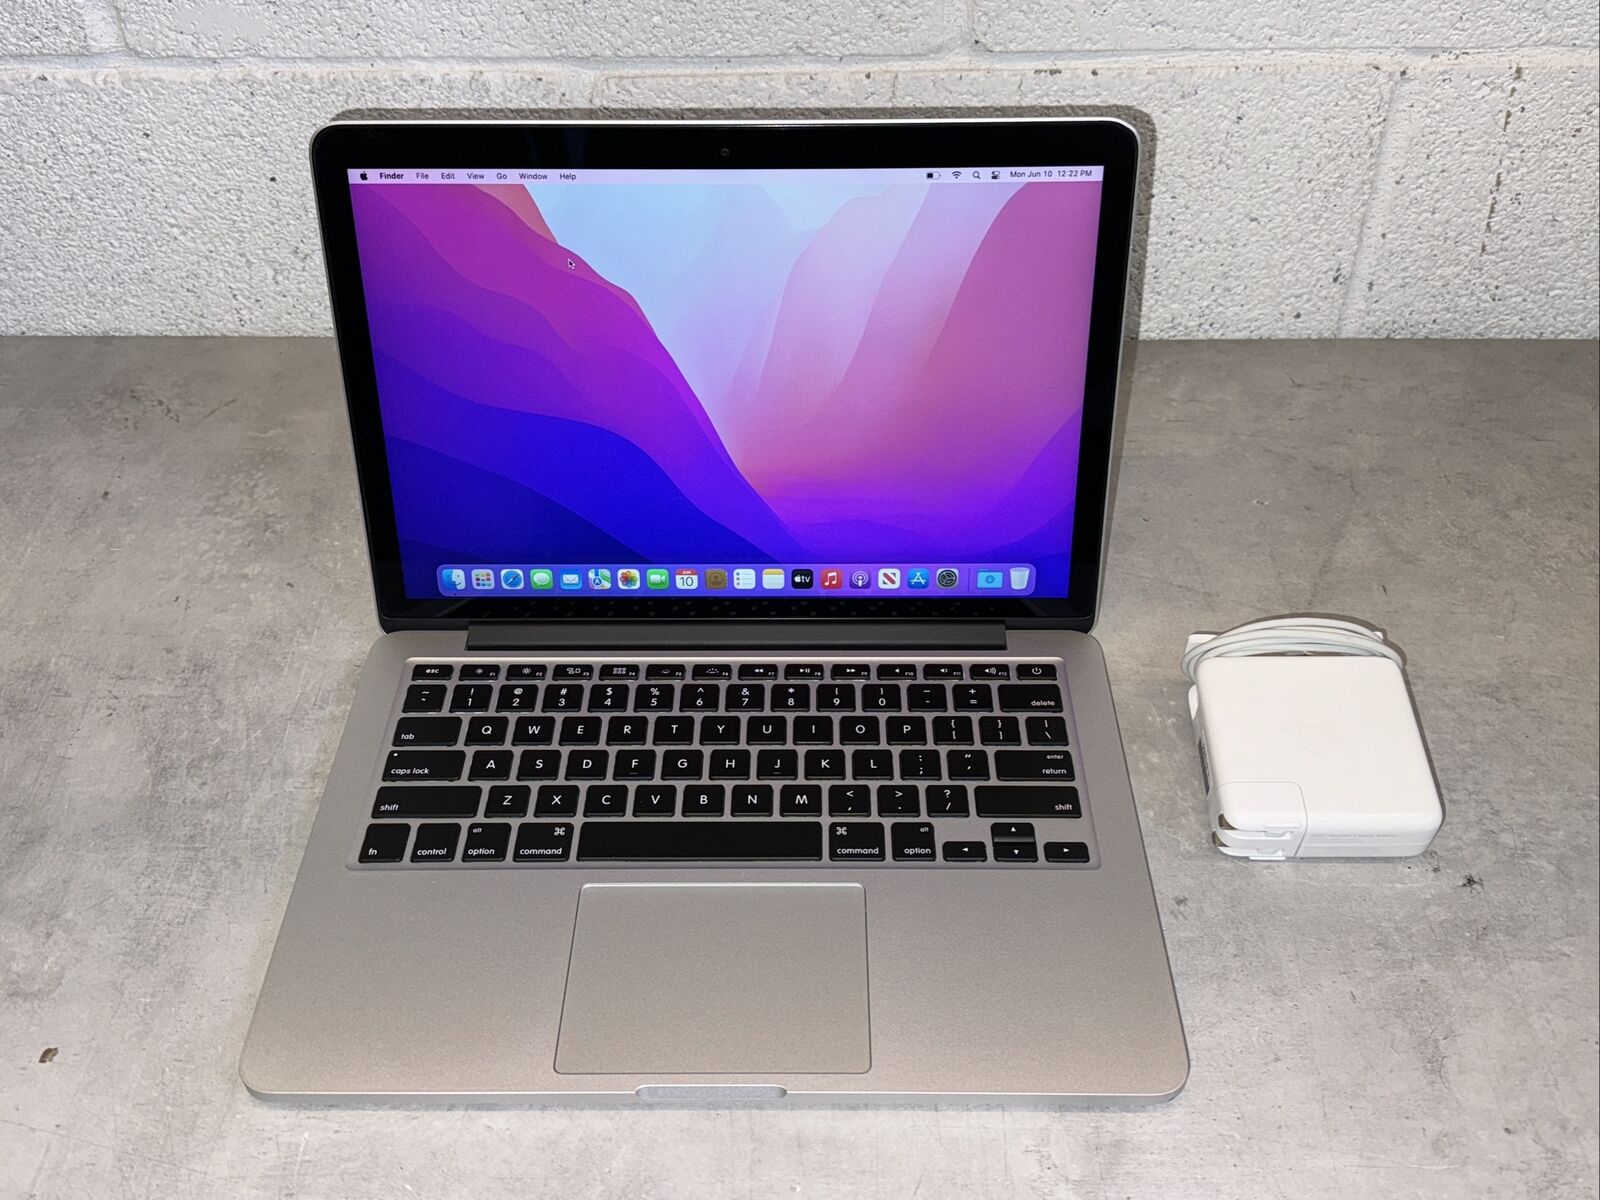 Apple MacBook Pro (13-inch, Mid 2015) | Intel Core i5 | 8 GB Ram | 128 GB SSD